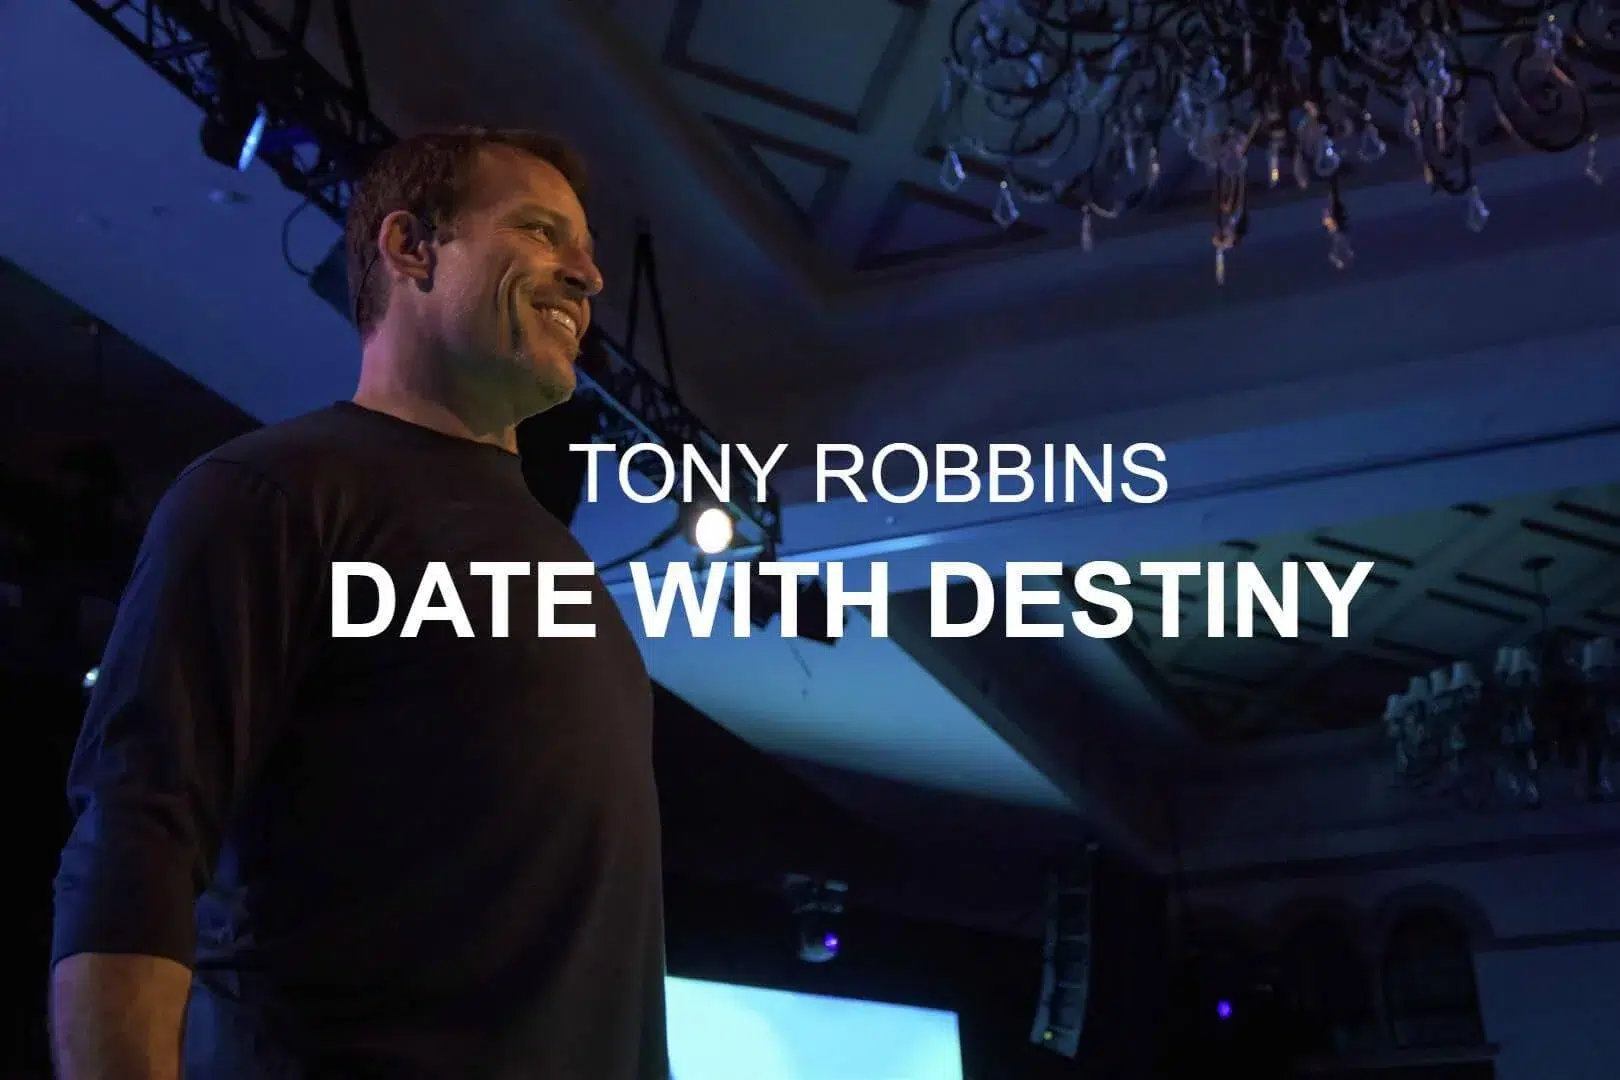 Date With Destiny by Tony Robbins